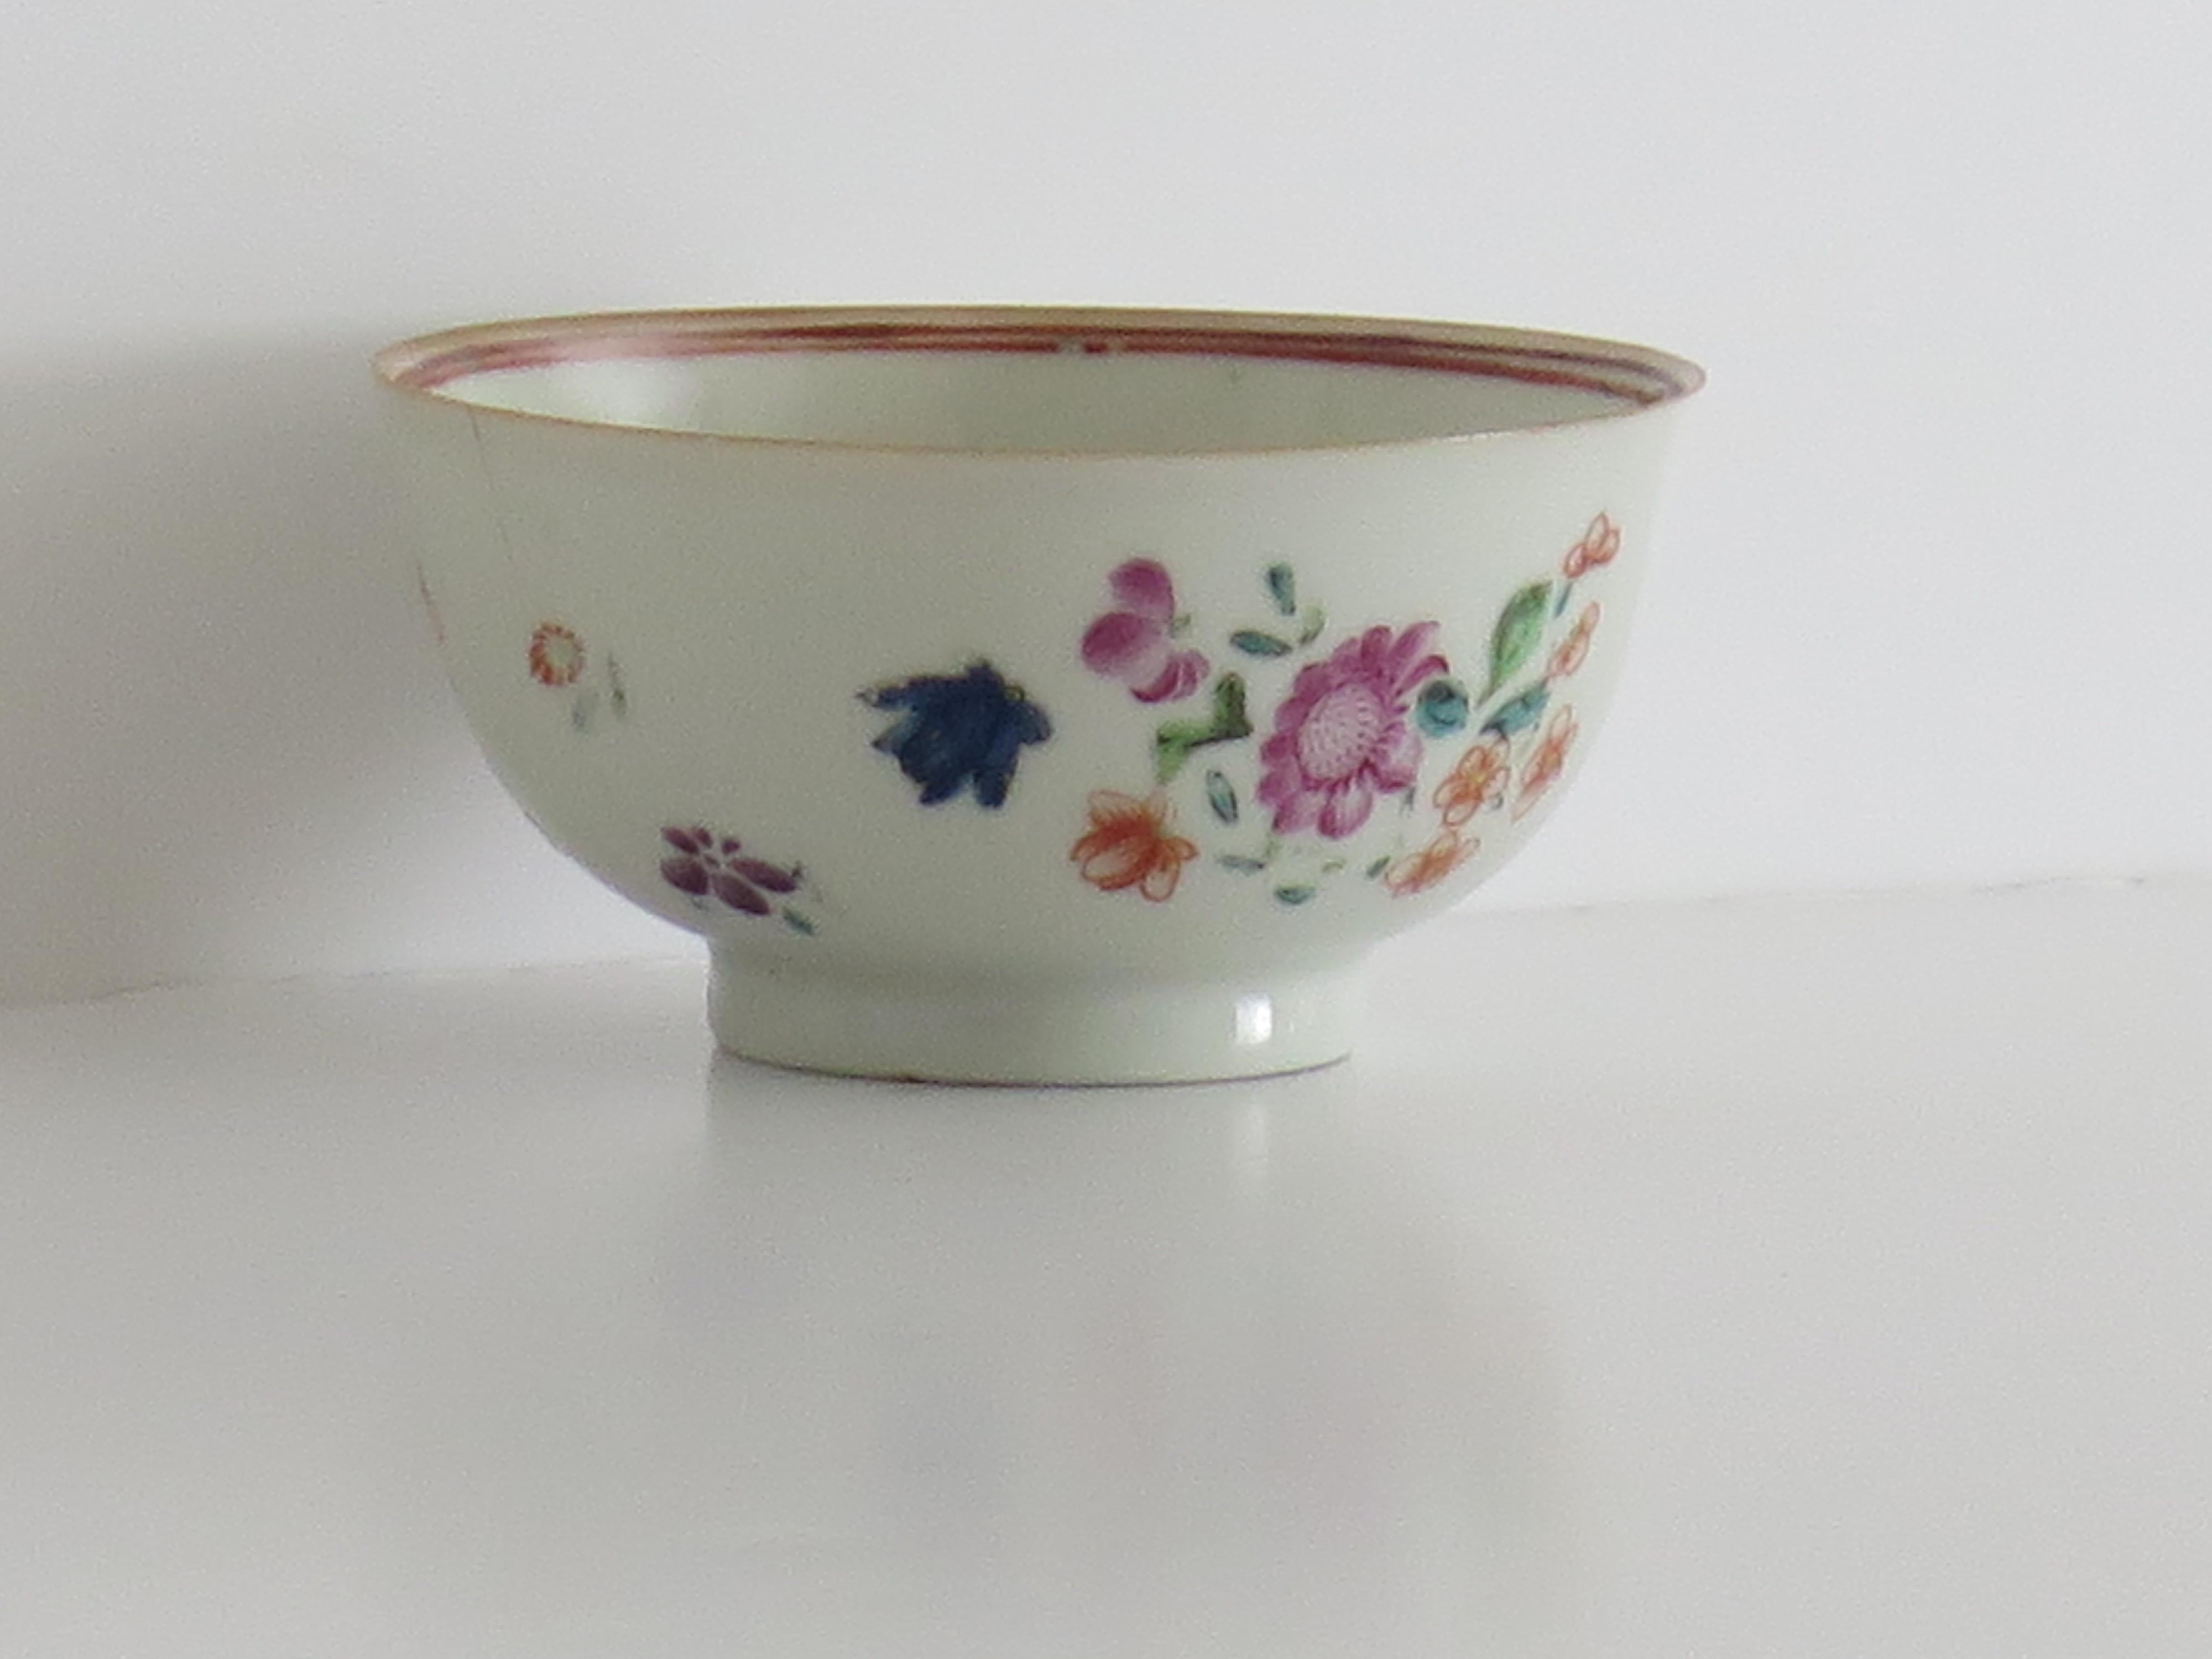 Il s'agit d'un bol d'exportation chinois peint à la main datant de la fin du XVIIIe siècle, dynastie Qing, période Qianlong, 1736-1795. Nous datons cette pièce d'environ 1780.

Le bol est bien empoté sur un pied de hauteur moyenne, le tout fait